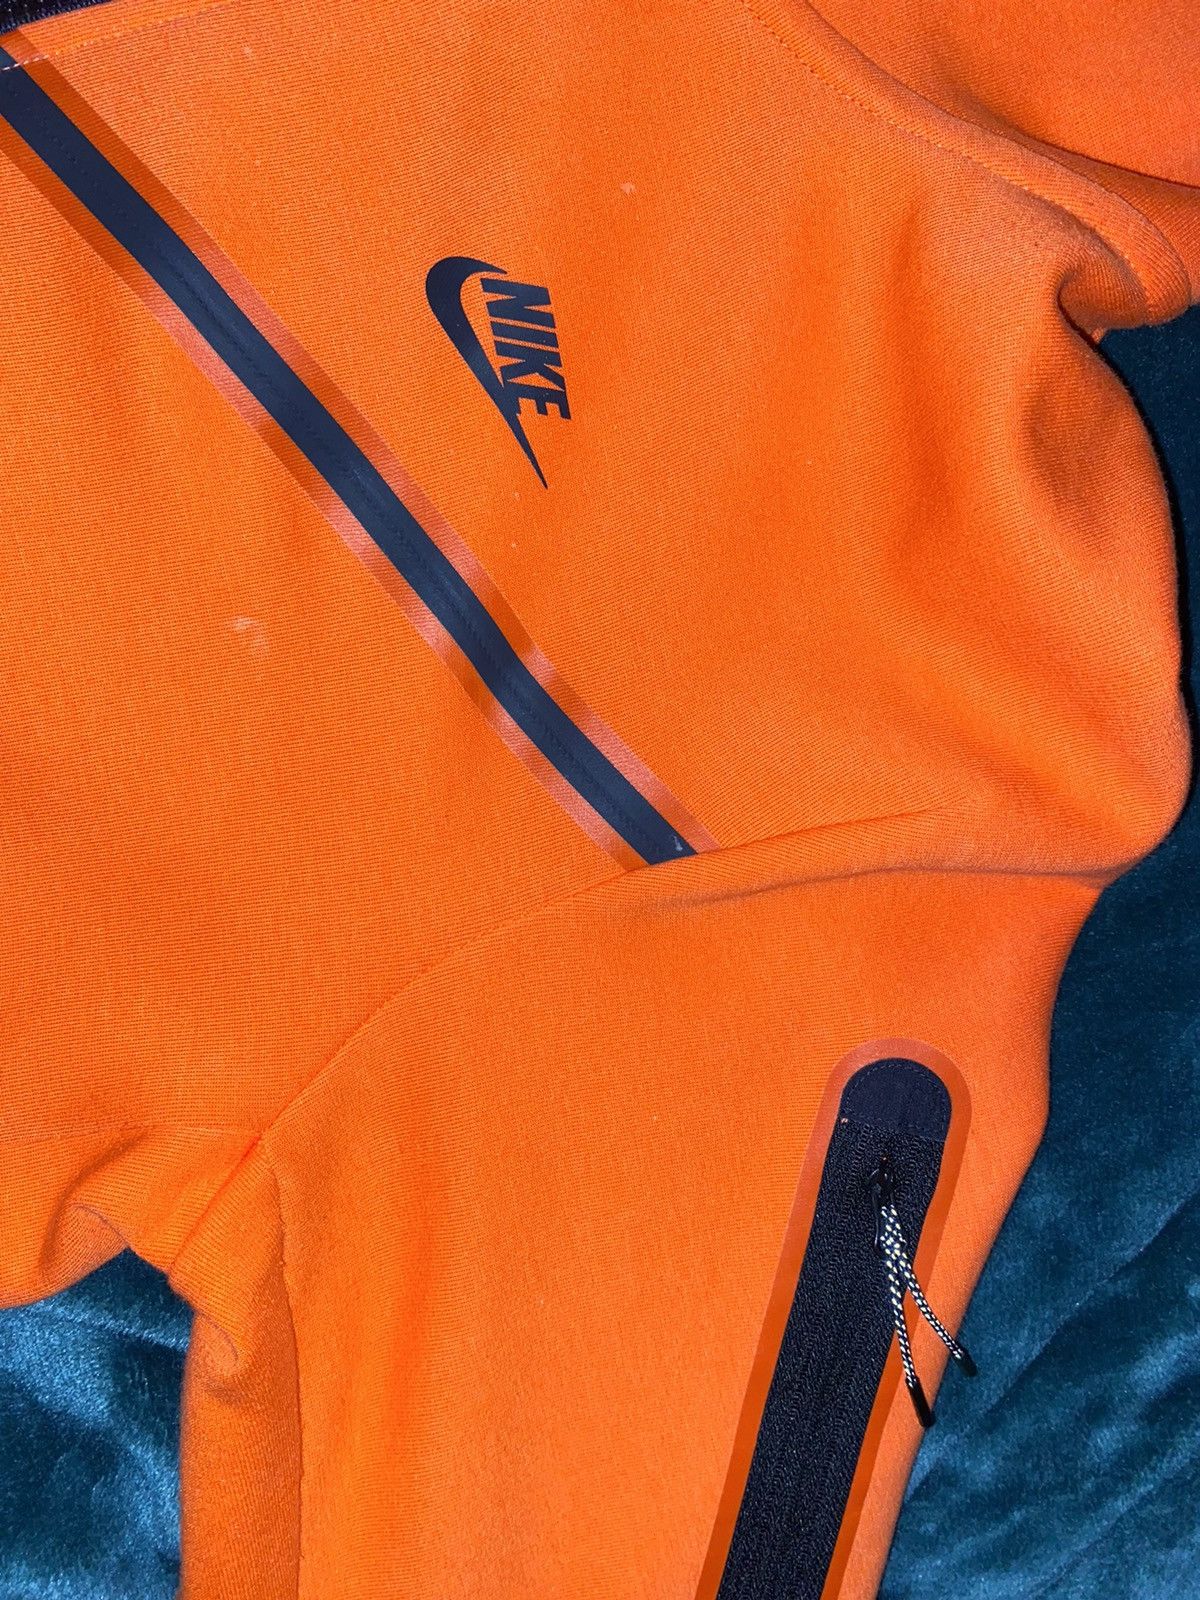 Nike Nike Tech Fleece Full Zip Hoodie Size US L / EU 52-54 / 3 - 3 Thumbnail